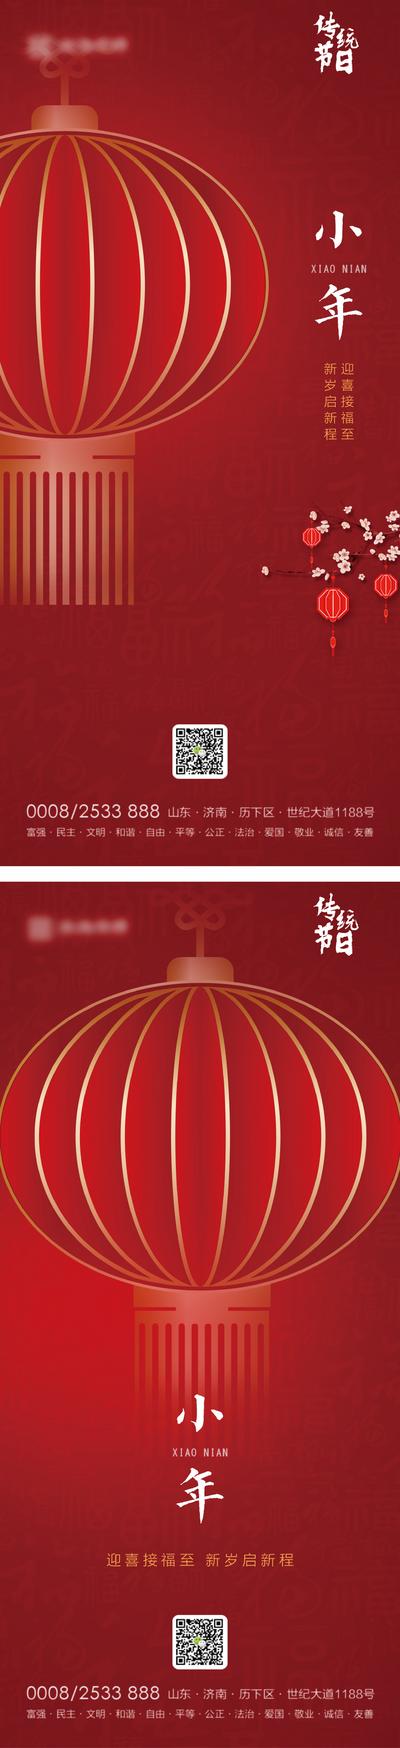 南门网 海报 小年 中国传统节日 灯笼 系列